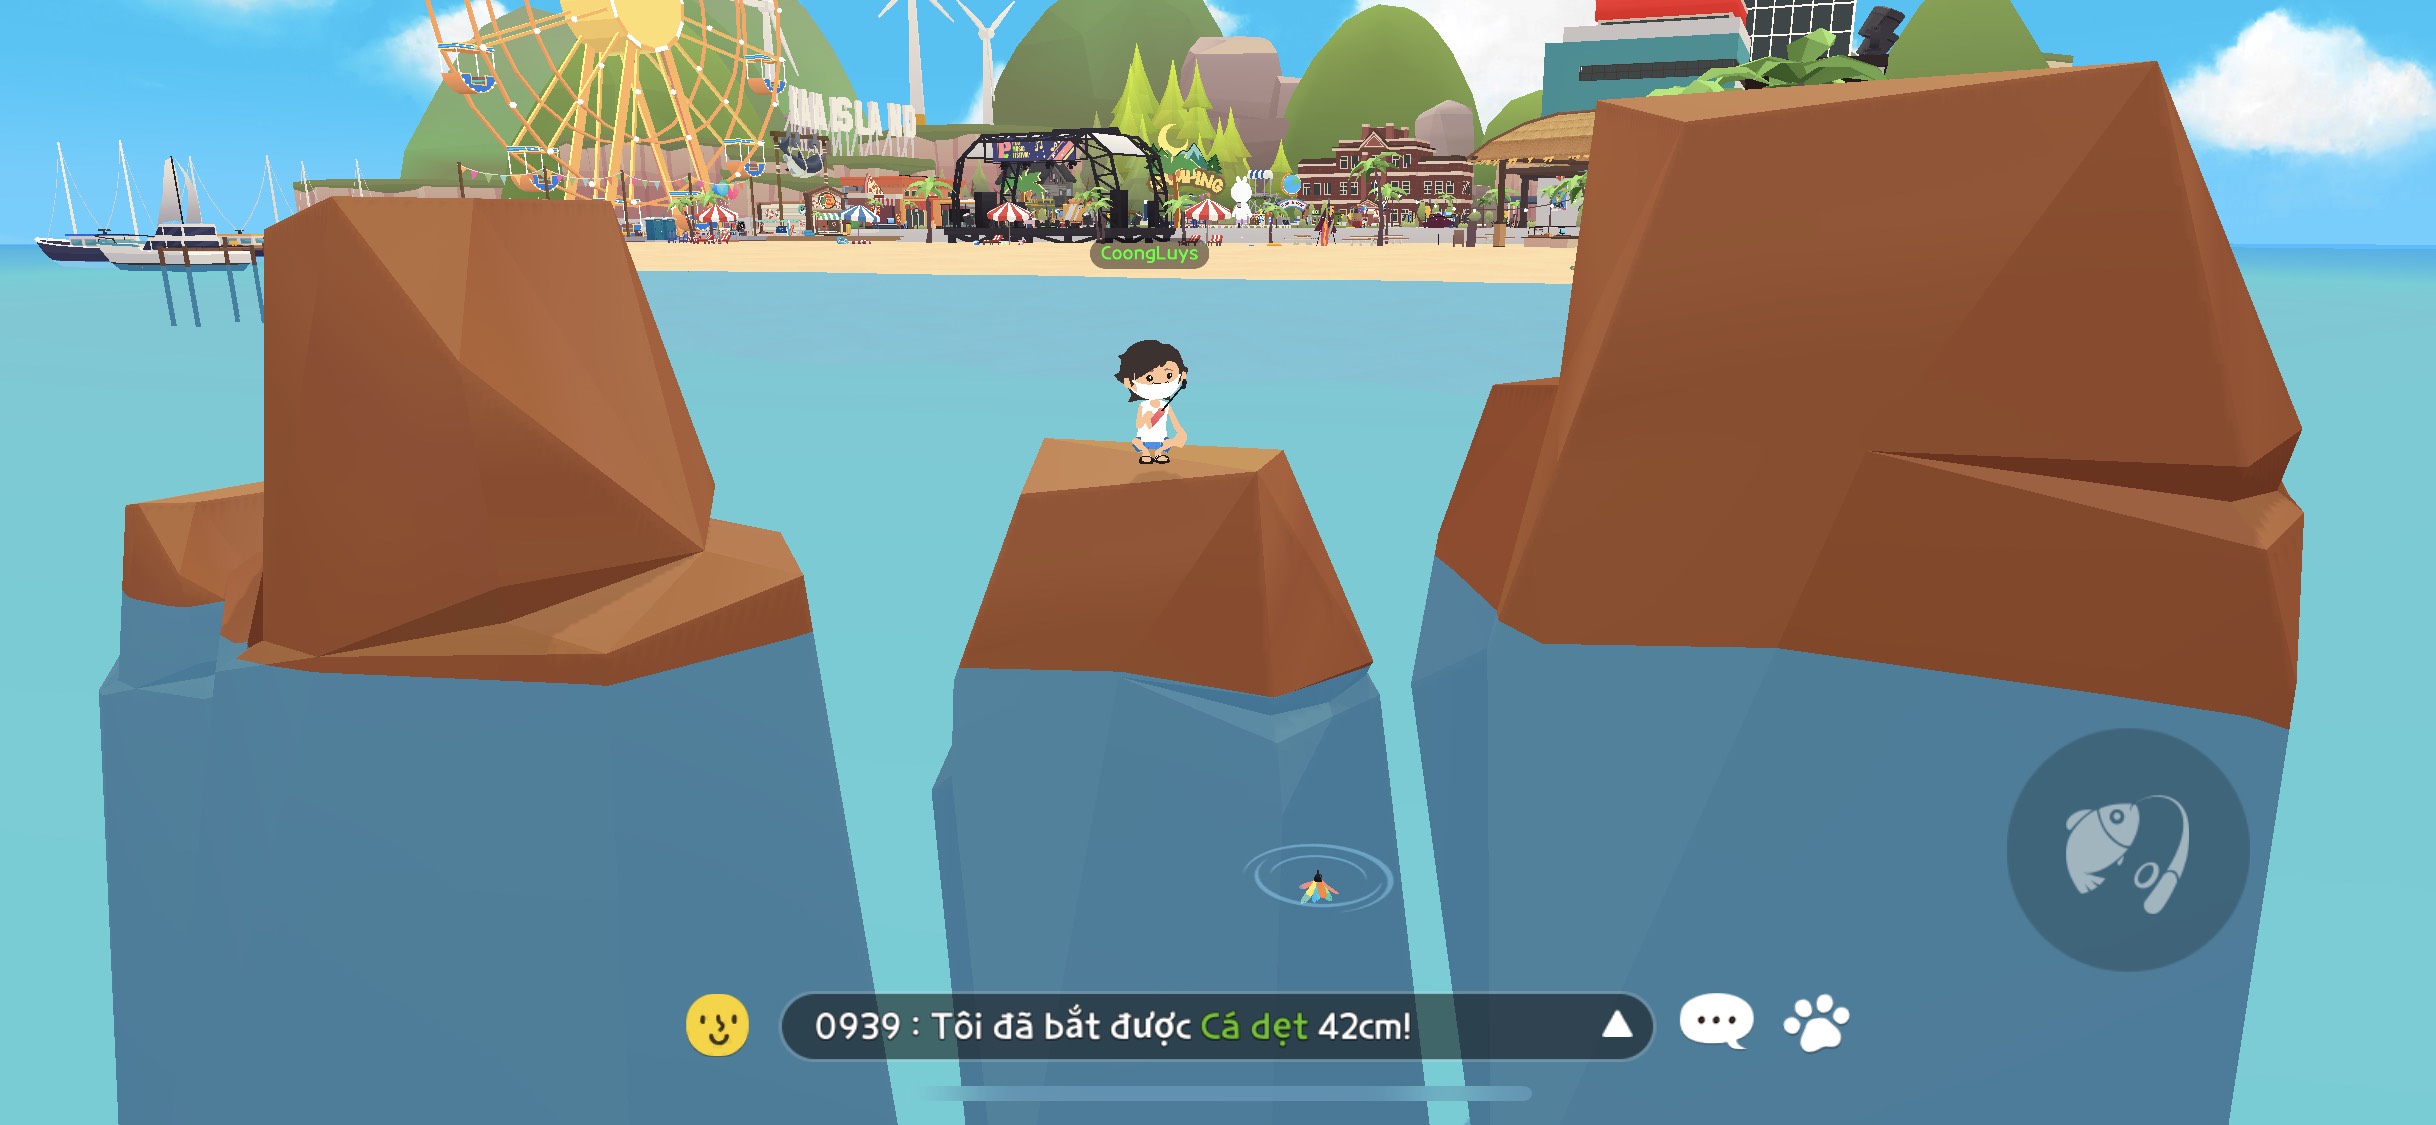 Mách bạn mẹo câu cá và cách câu cá hiếm trong game Play Together